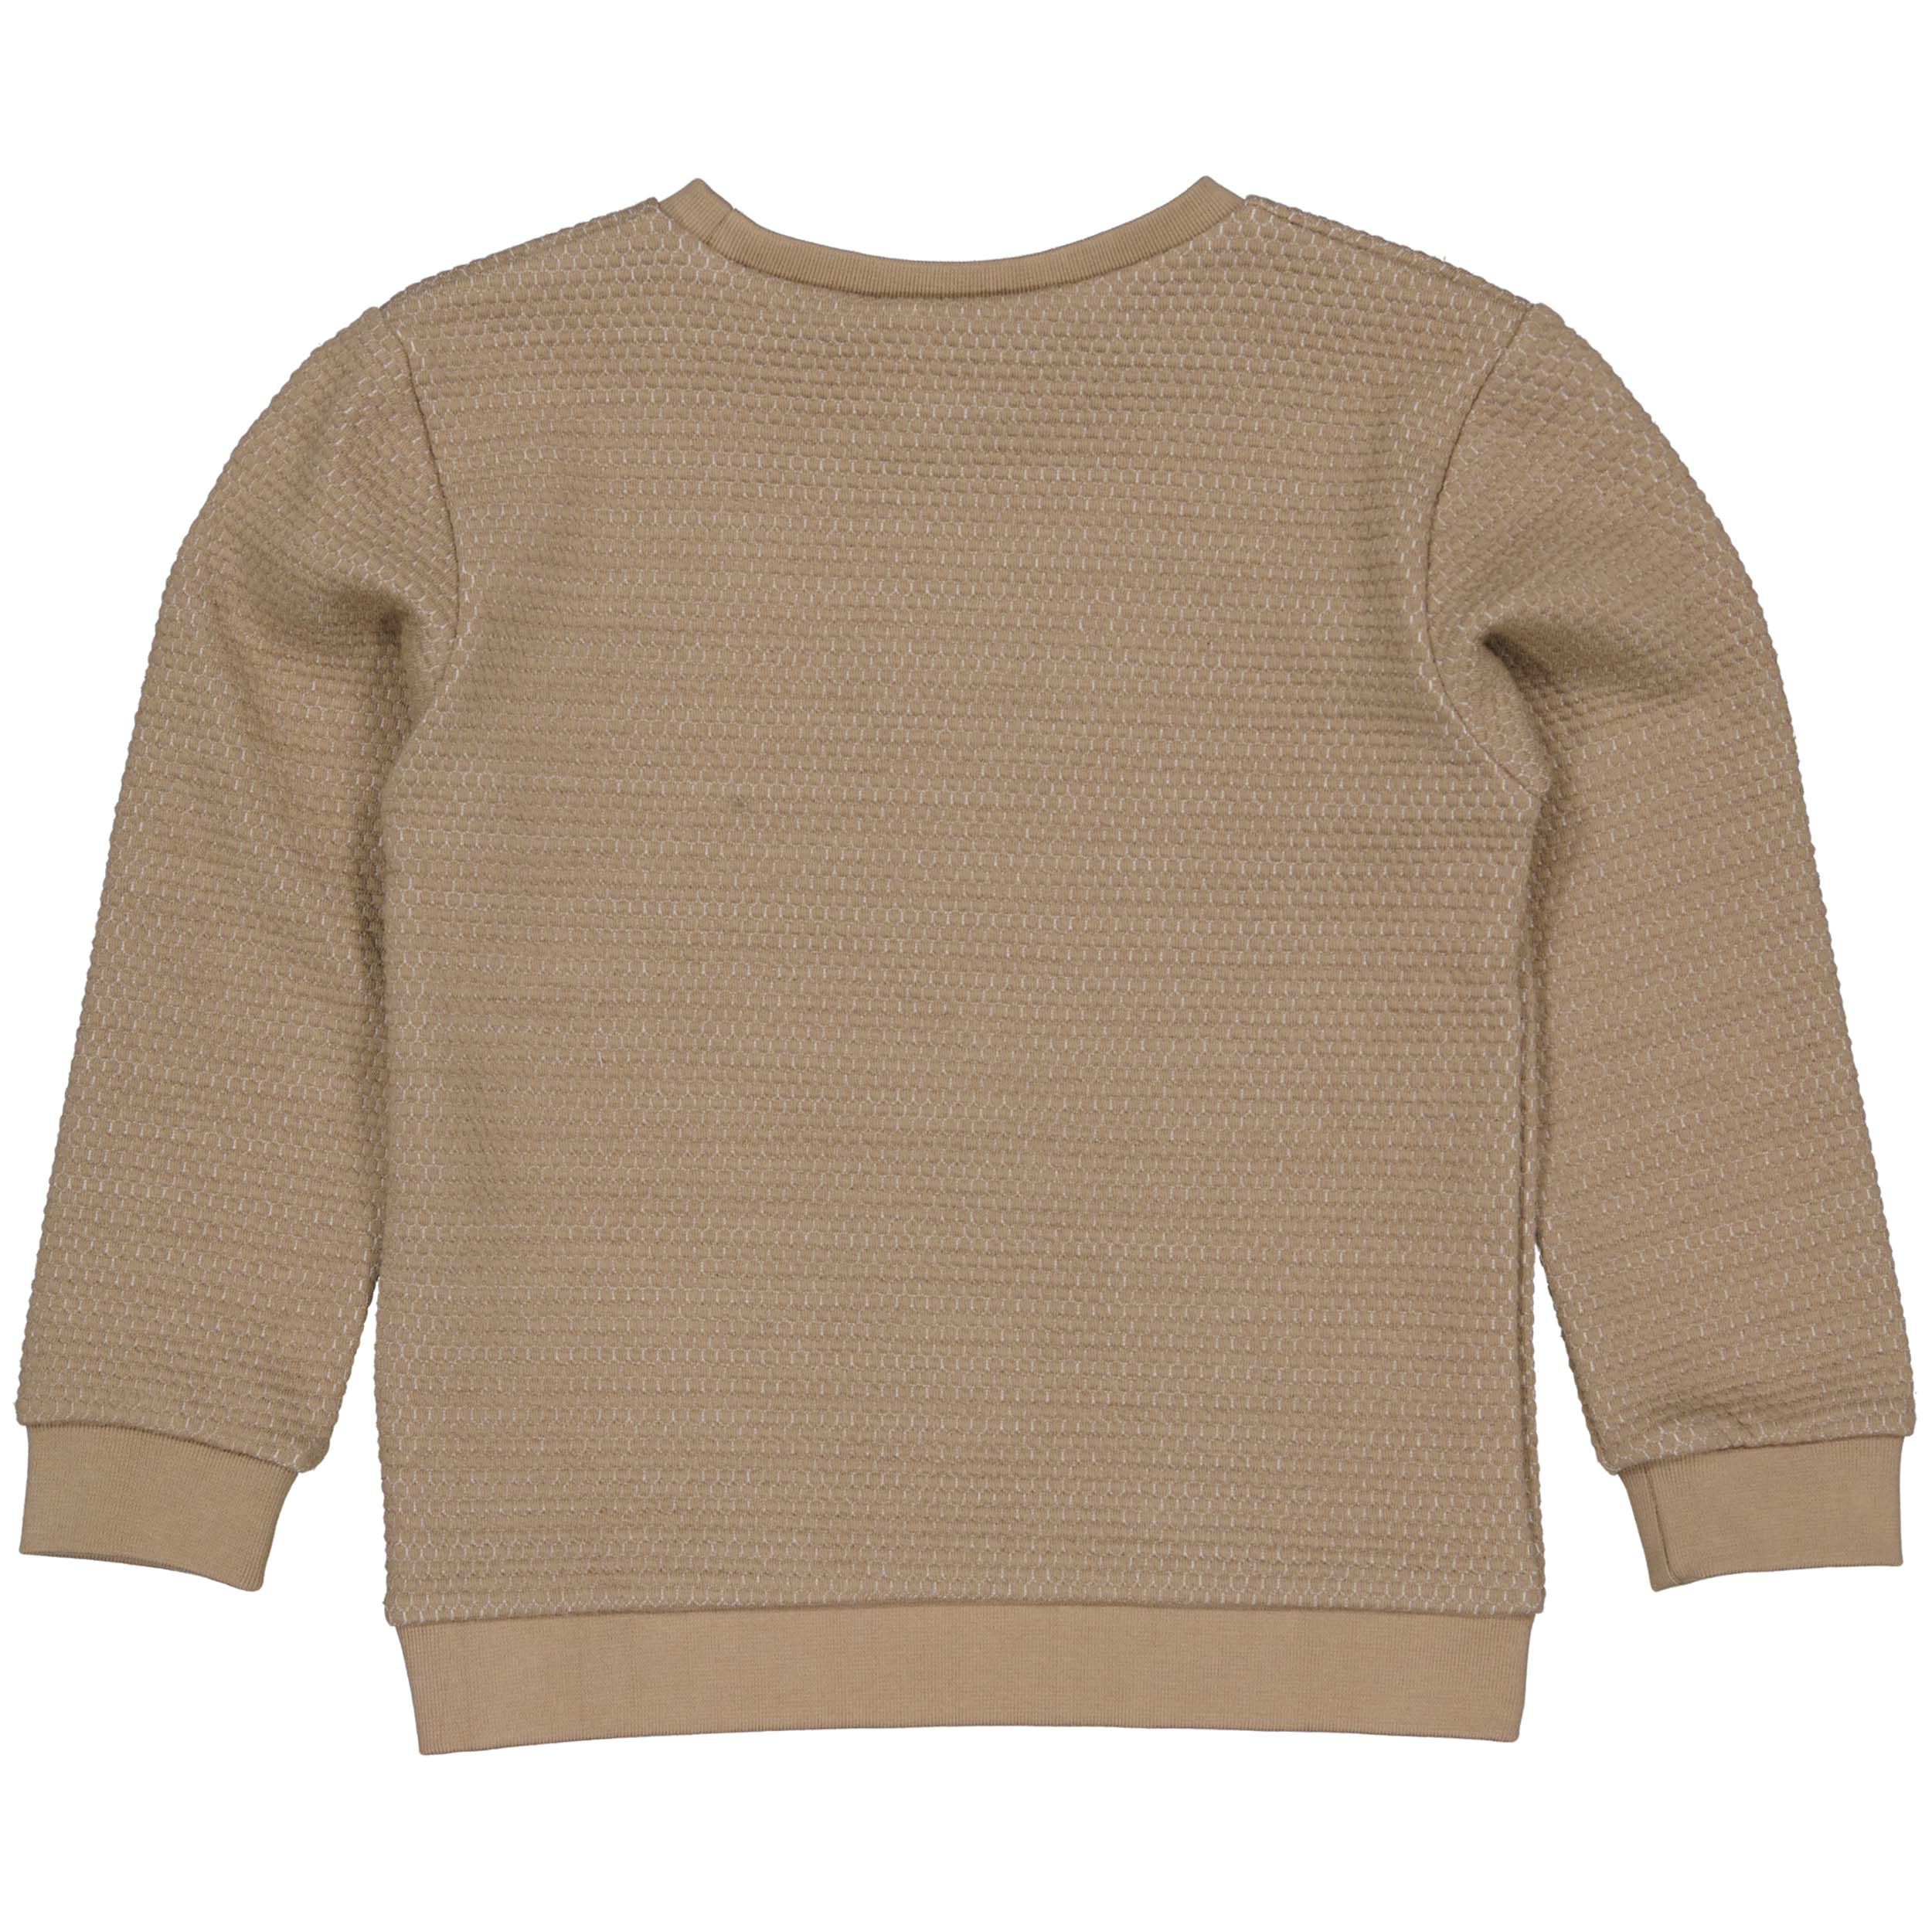 Jongens Sweater GERRITLW231 van Little Levv in de kleur Taupe in maat 128.